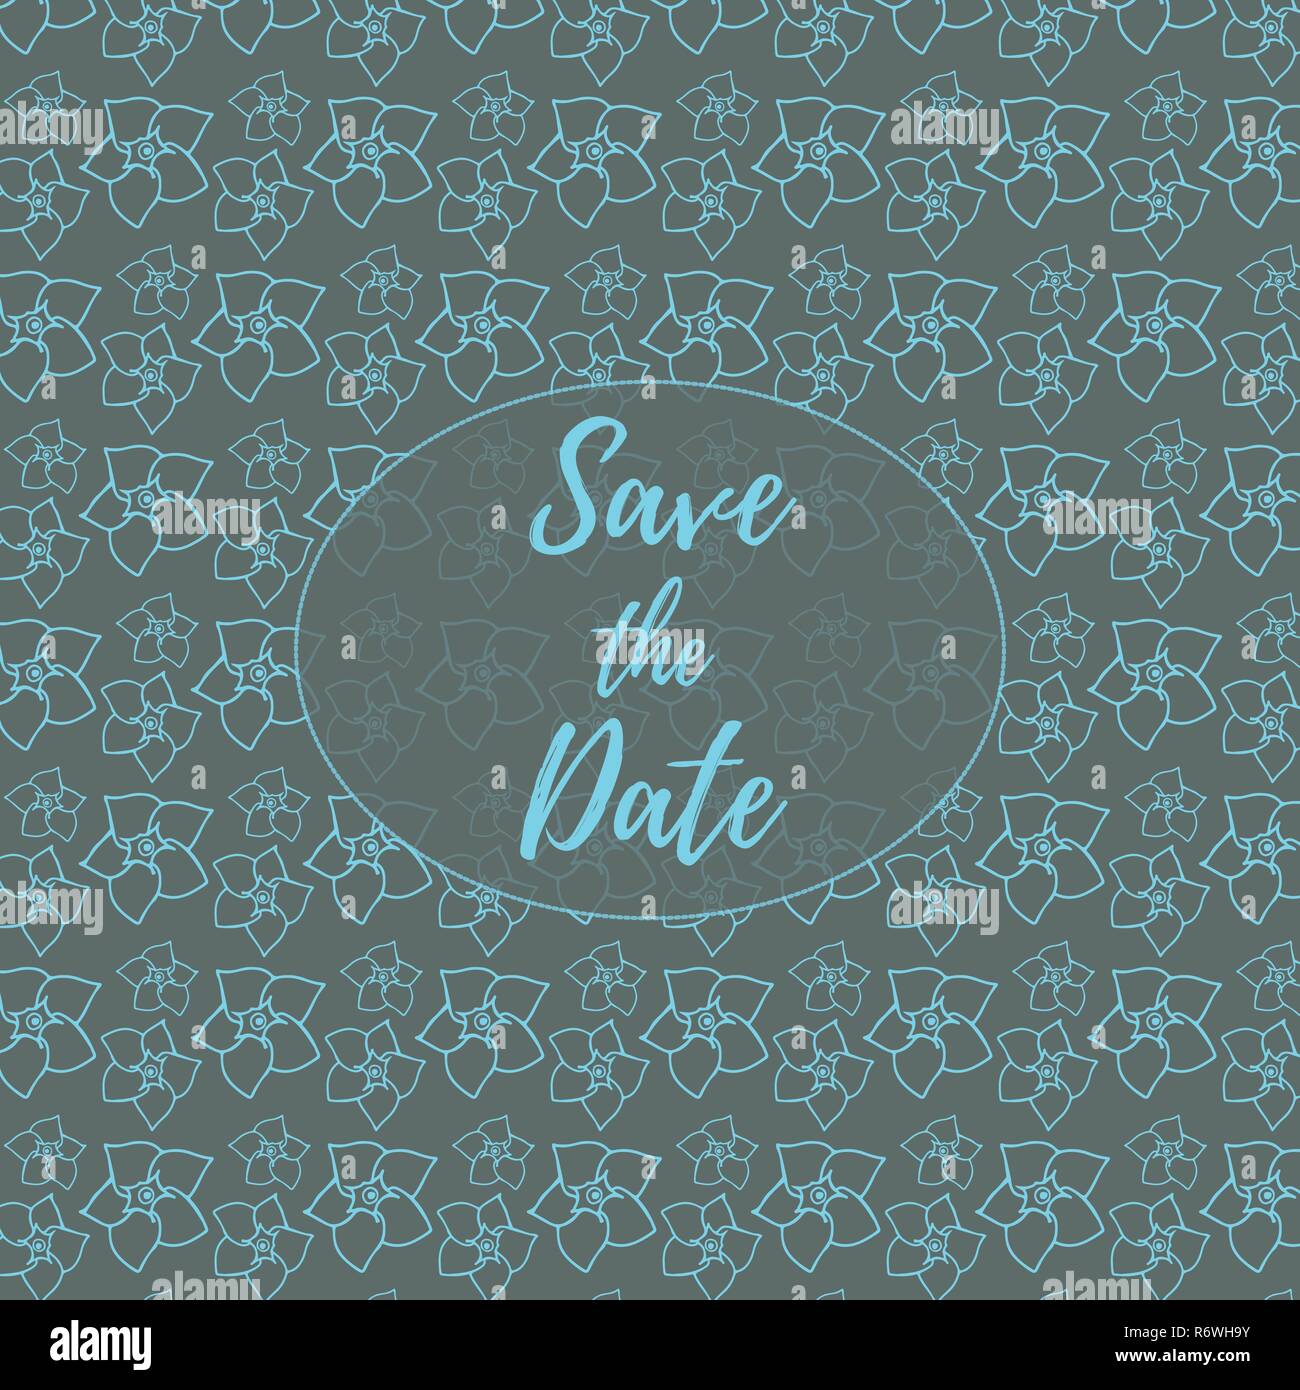 Datum speichern, Hochzeit Einladungskarte Vorlage mit hellblauen Blüten vector pattern Abbildung auf einem dunkelgrauen Hintergrund. Floral background. Stock Vektor